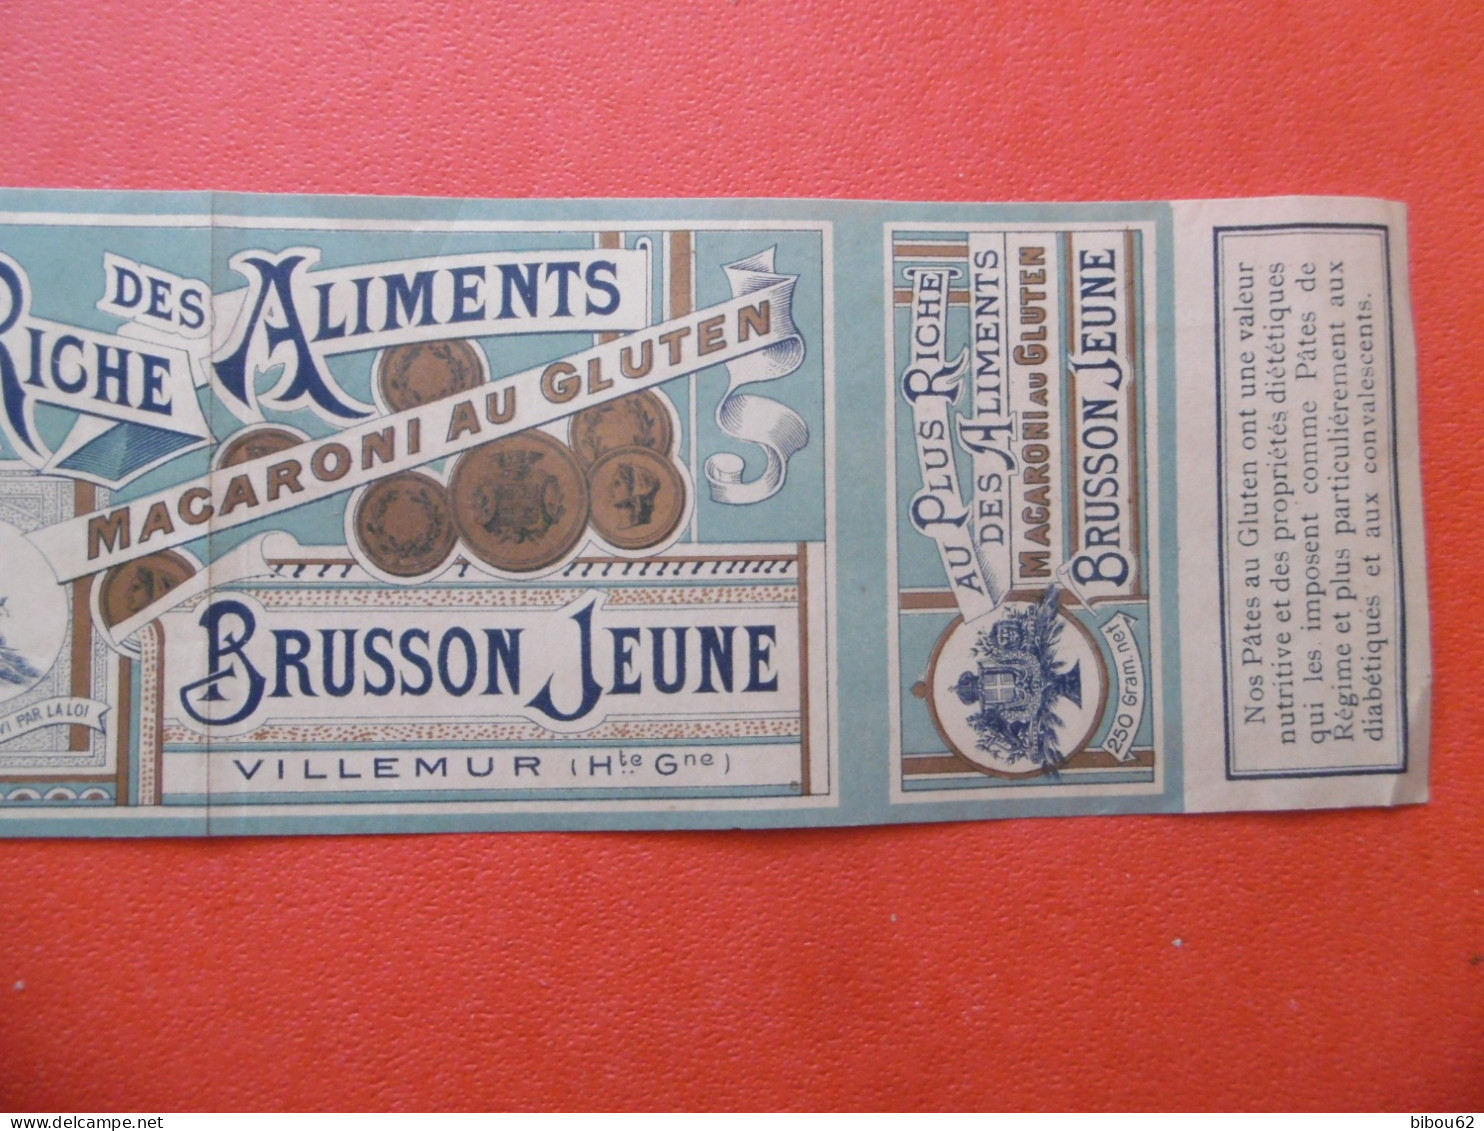 VILLEMUR  ( 31 ) Bande Publicitaire D'habillage De Boite - BRUSSON  Jeune - Macaroni Au Gluten - 1900 - Alimentos